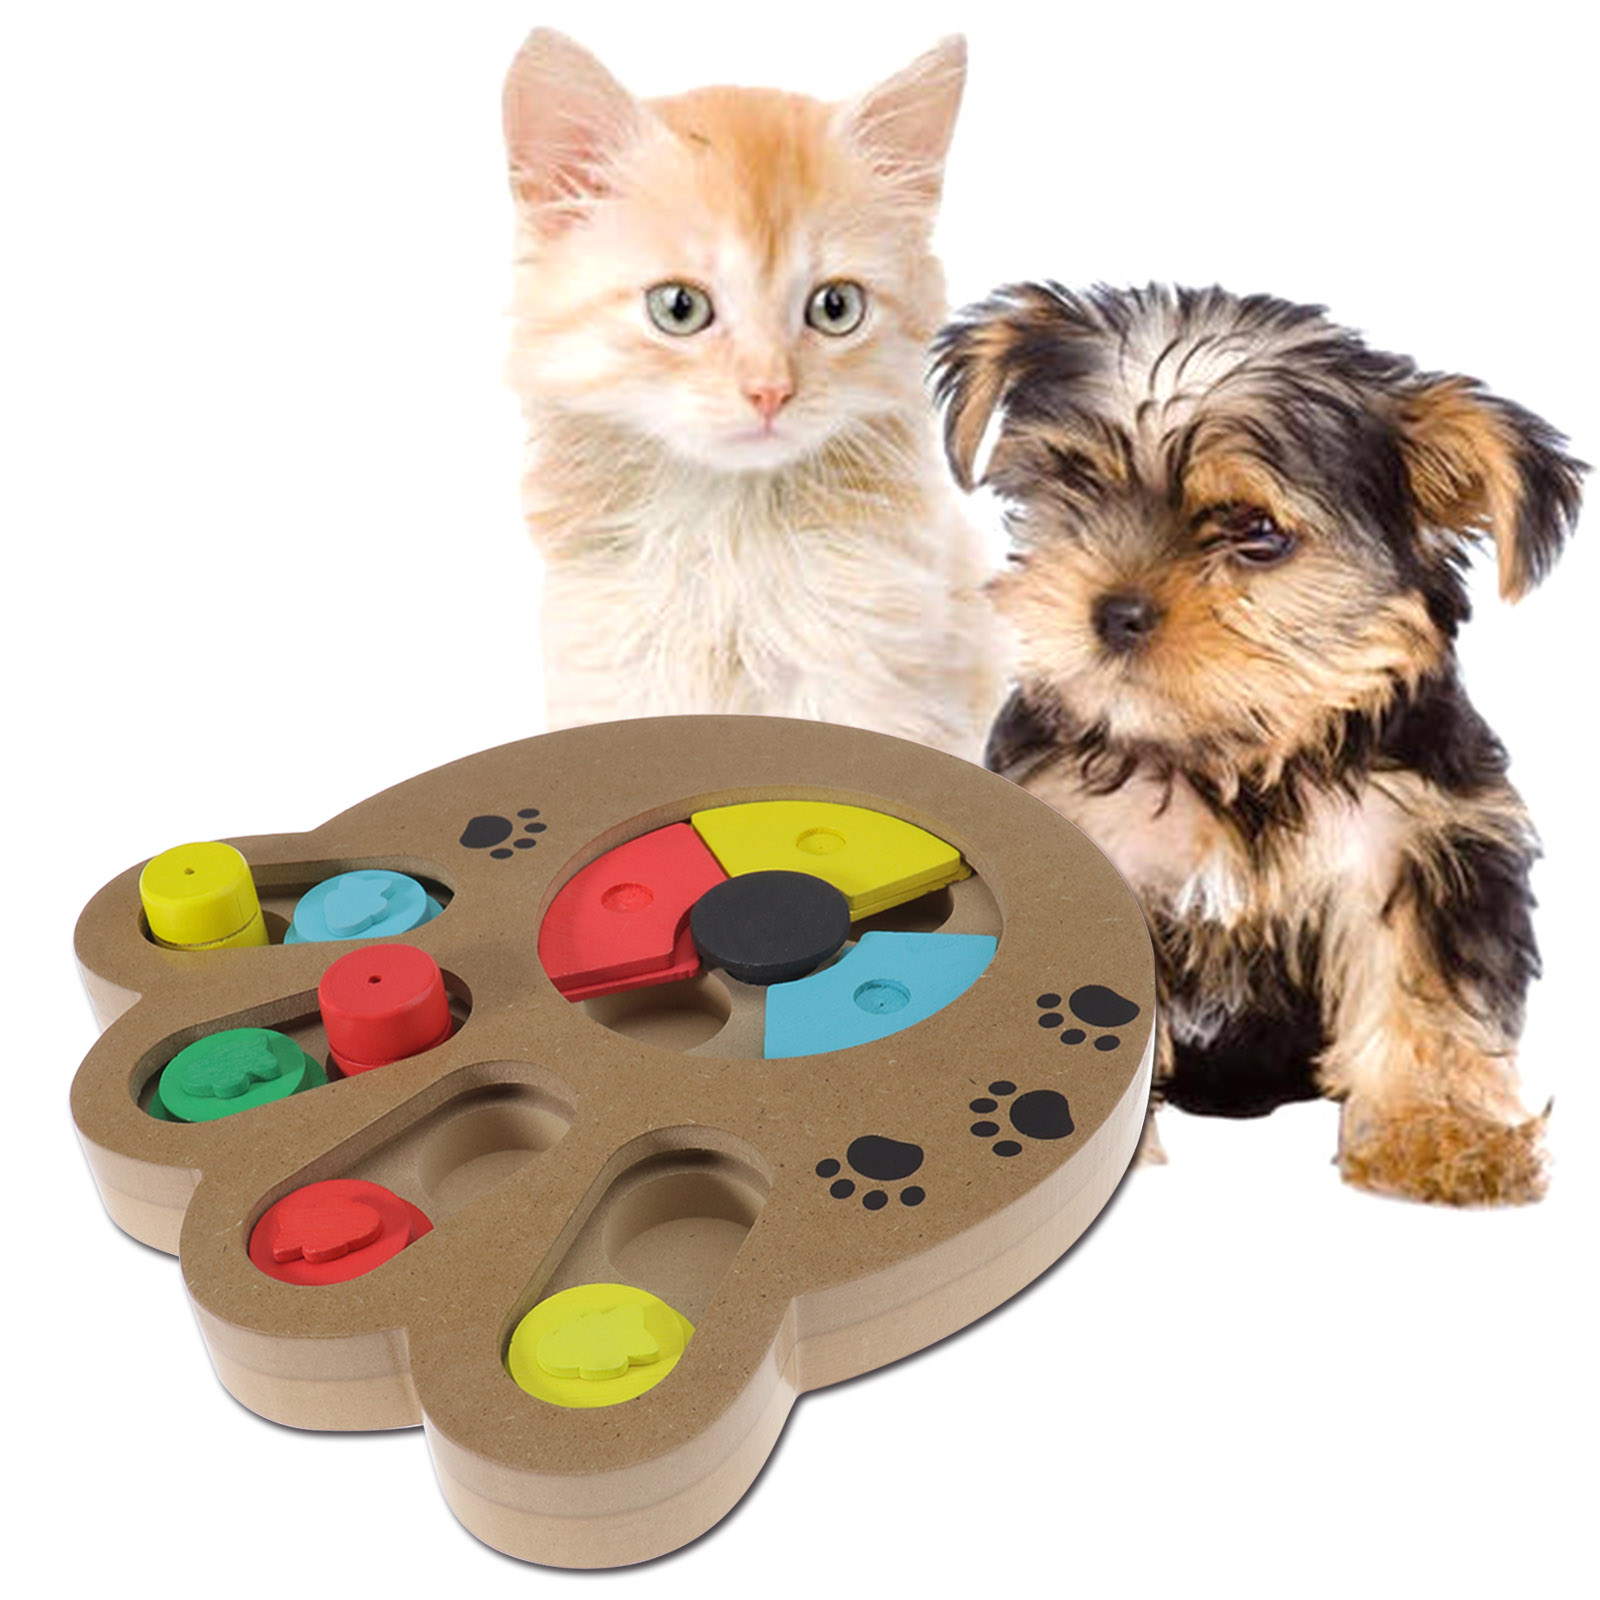 Katze Haustier Spiel Hund IQ Training Spielzeug Intelligenz Puzzle